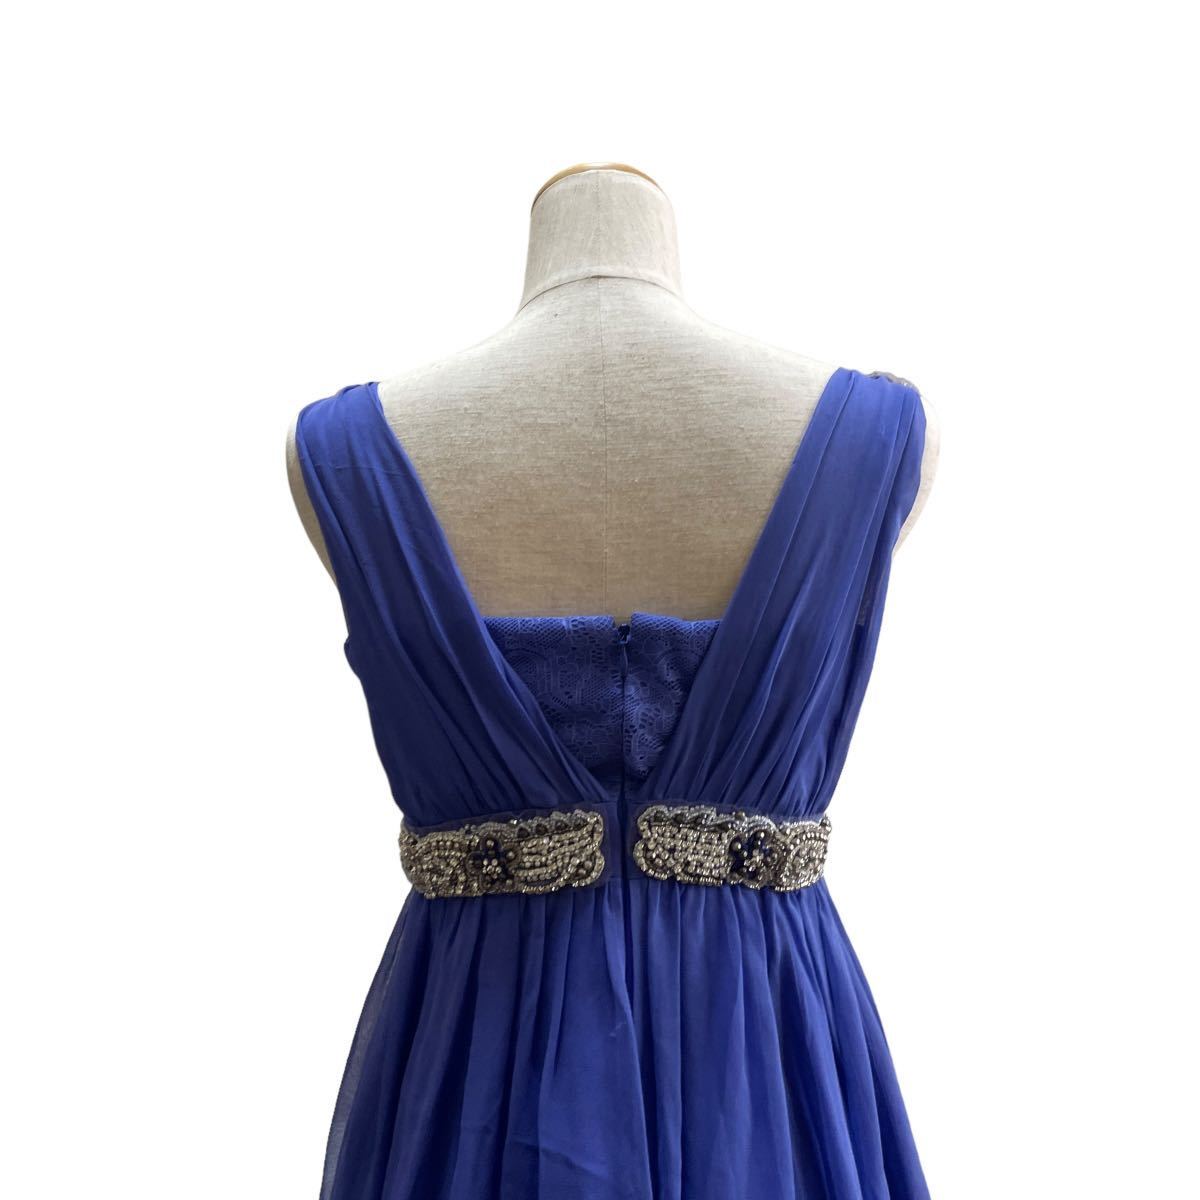 graceclass グレースクラス ワンピース ドレス ビジュー付き 36 S 青ブルー シルク100%_画像7